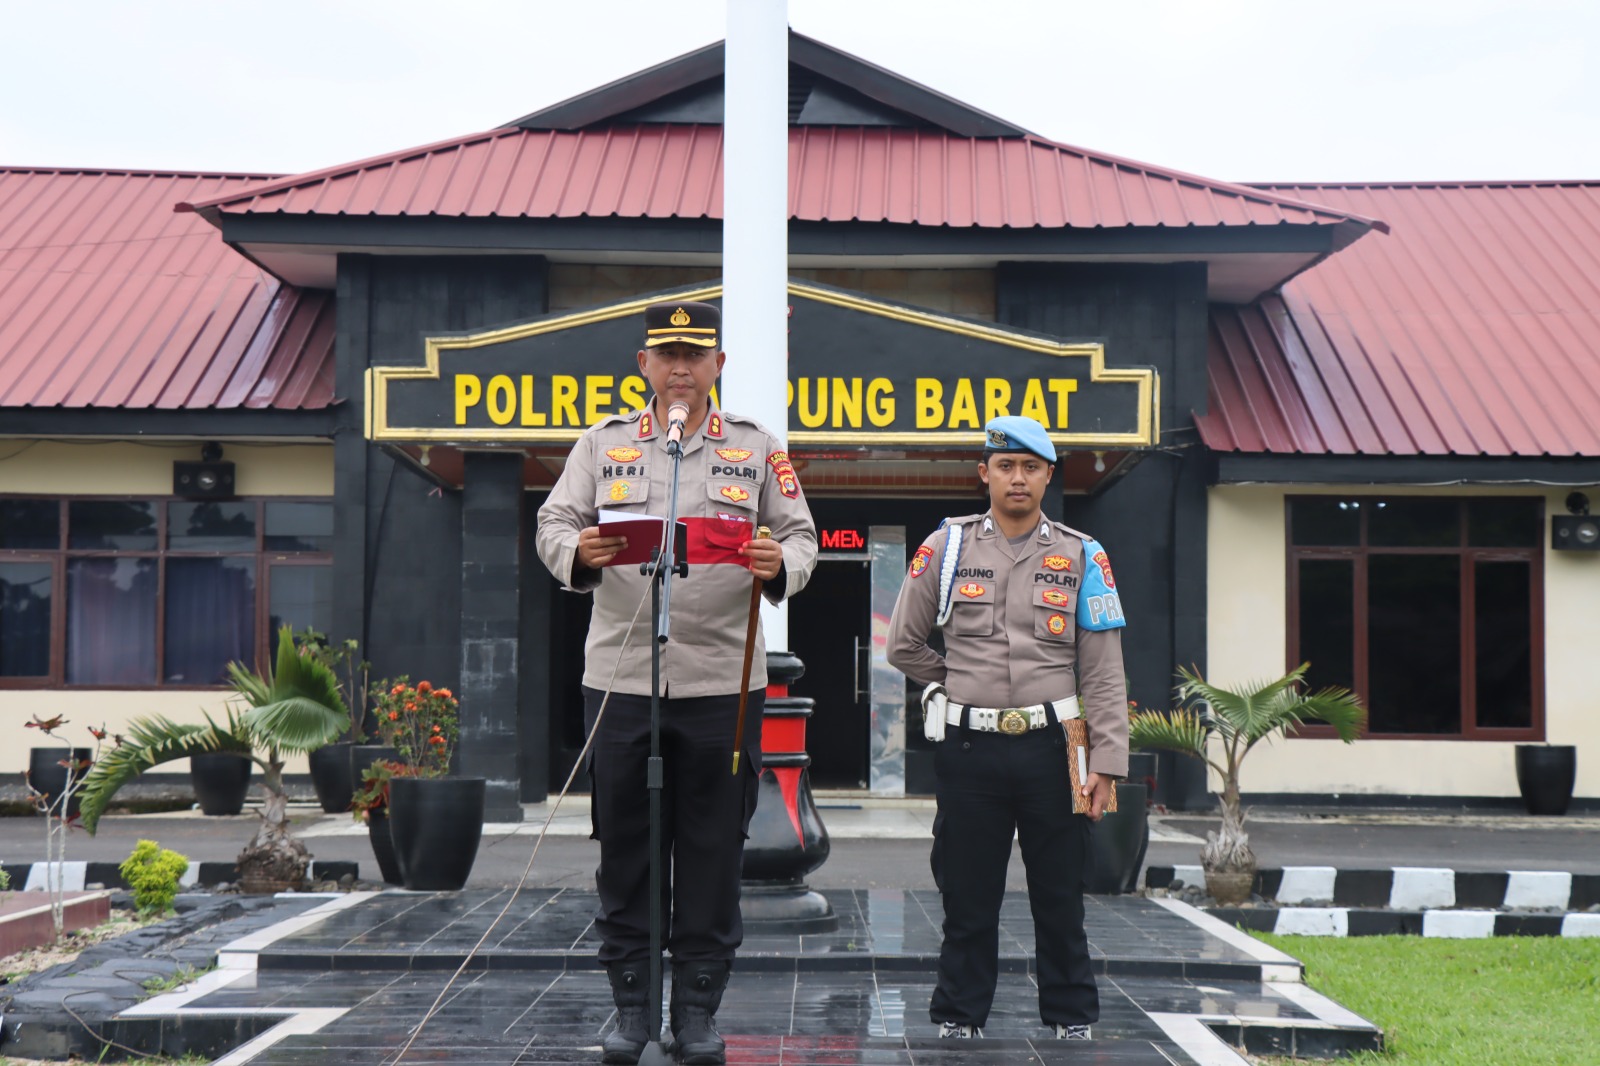 Polres Lambar Terapkan Program Pemolisian Masyarakat melalui Polisi RW